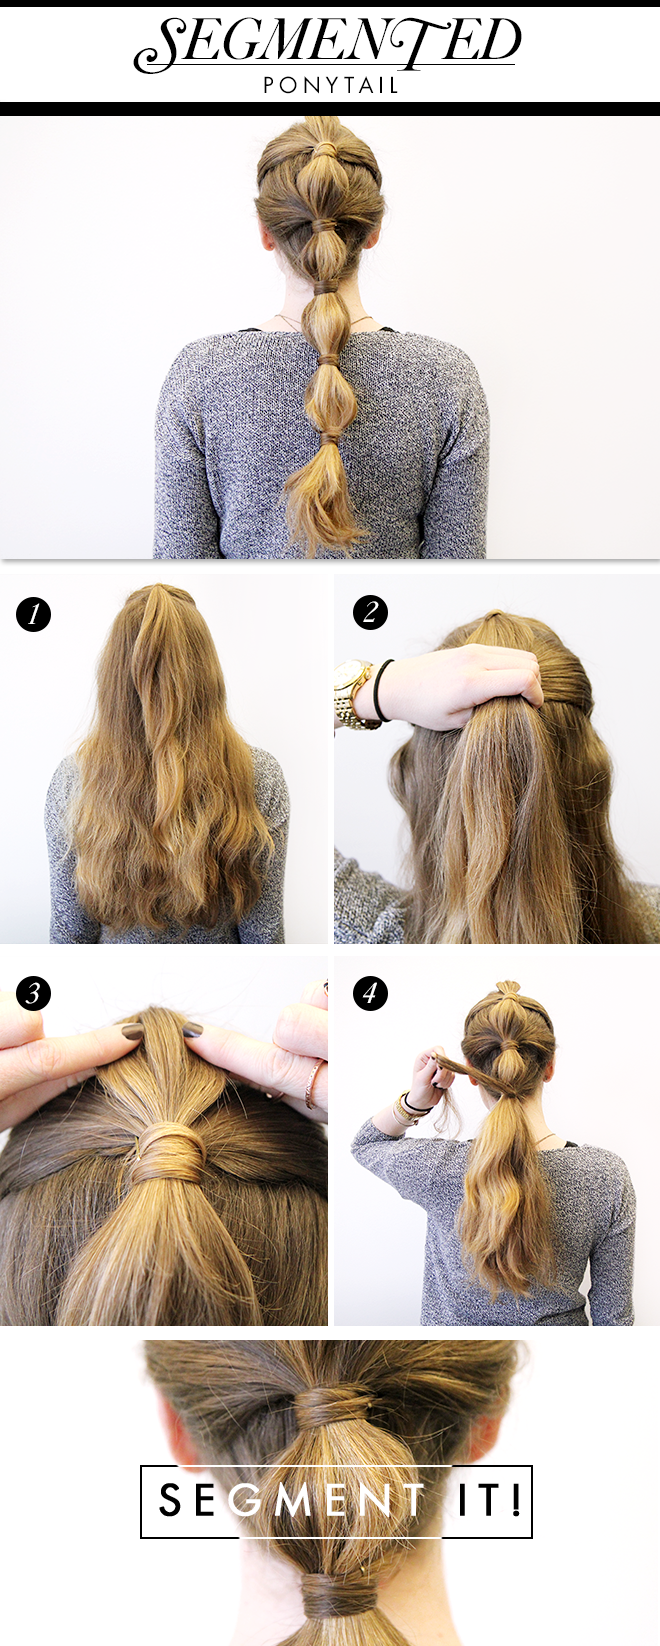 segmented ponytail